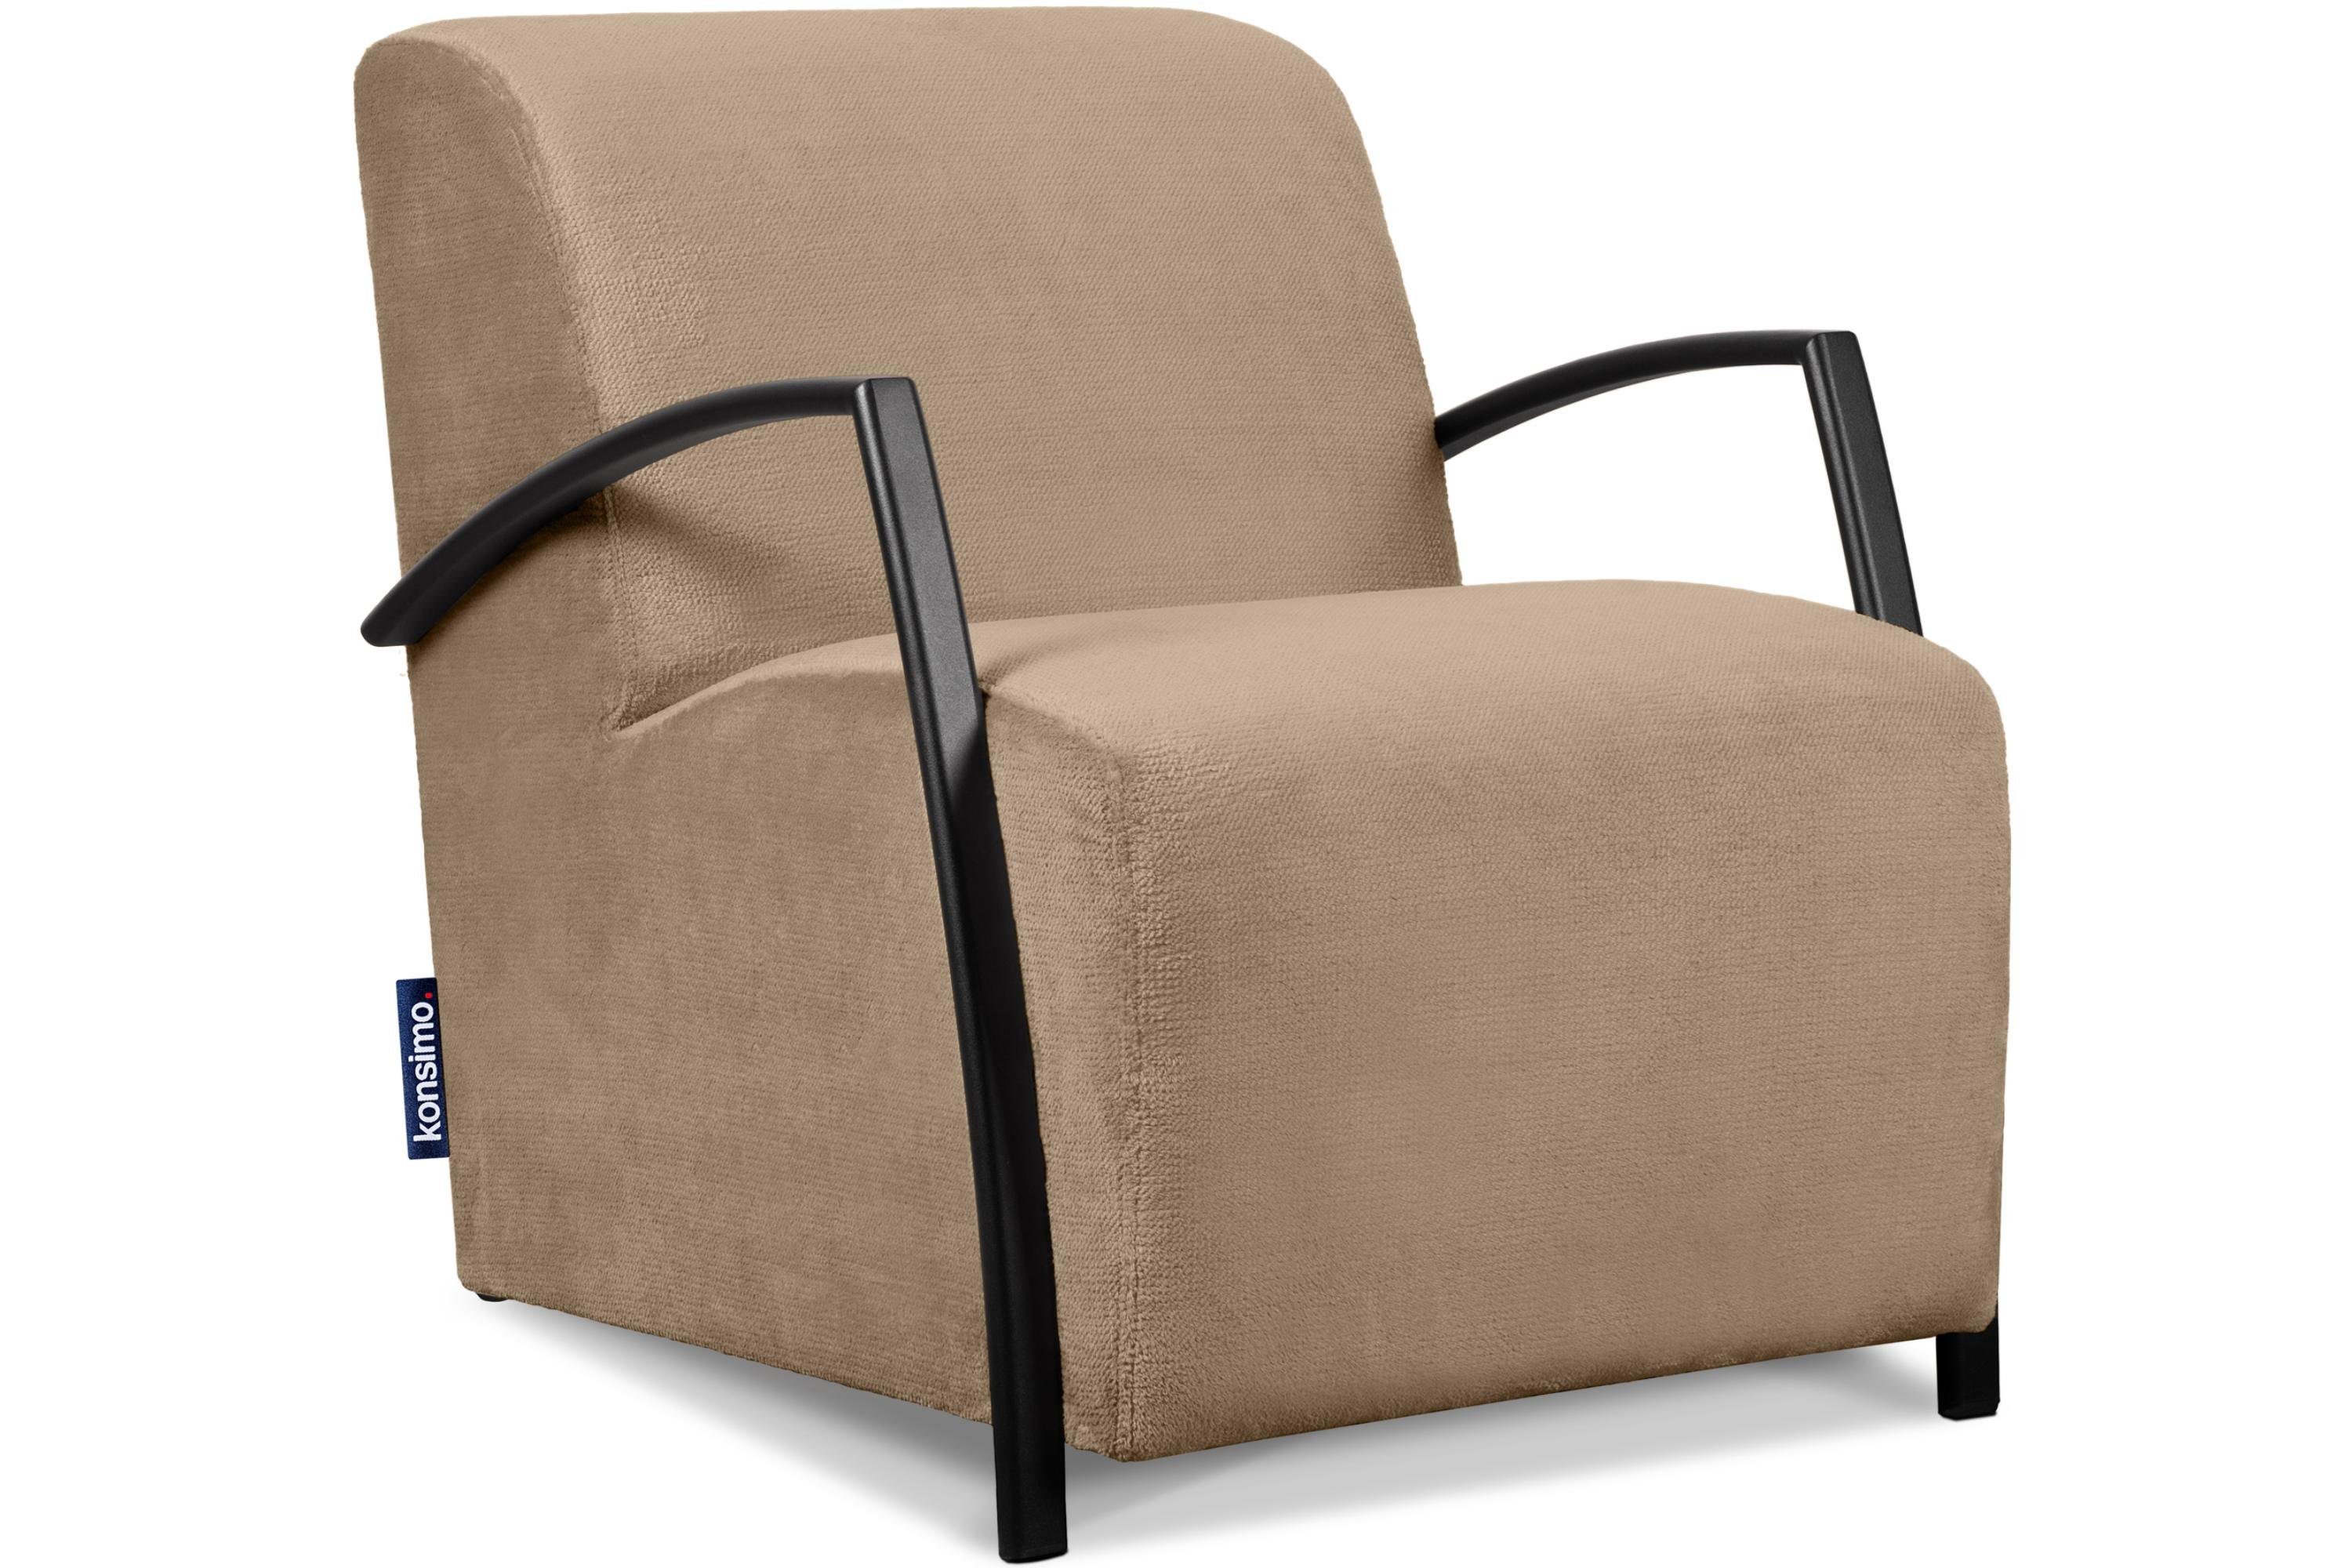 Konsimo Cocktailsessel CARO Sessel, mit gewellter Feder im Sitz, ergonomische Form für bequemes Sitzen beige | beige